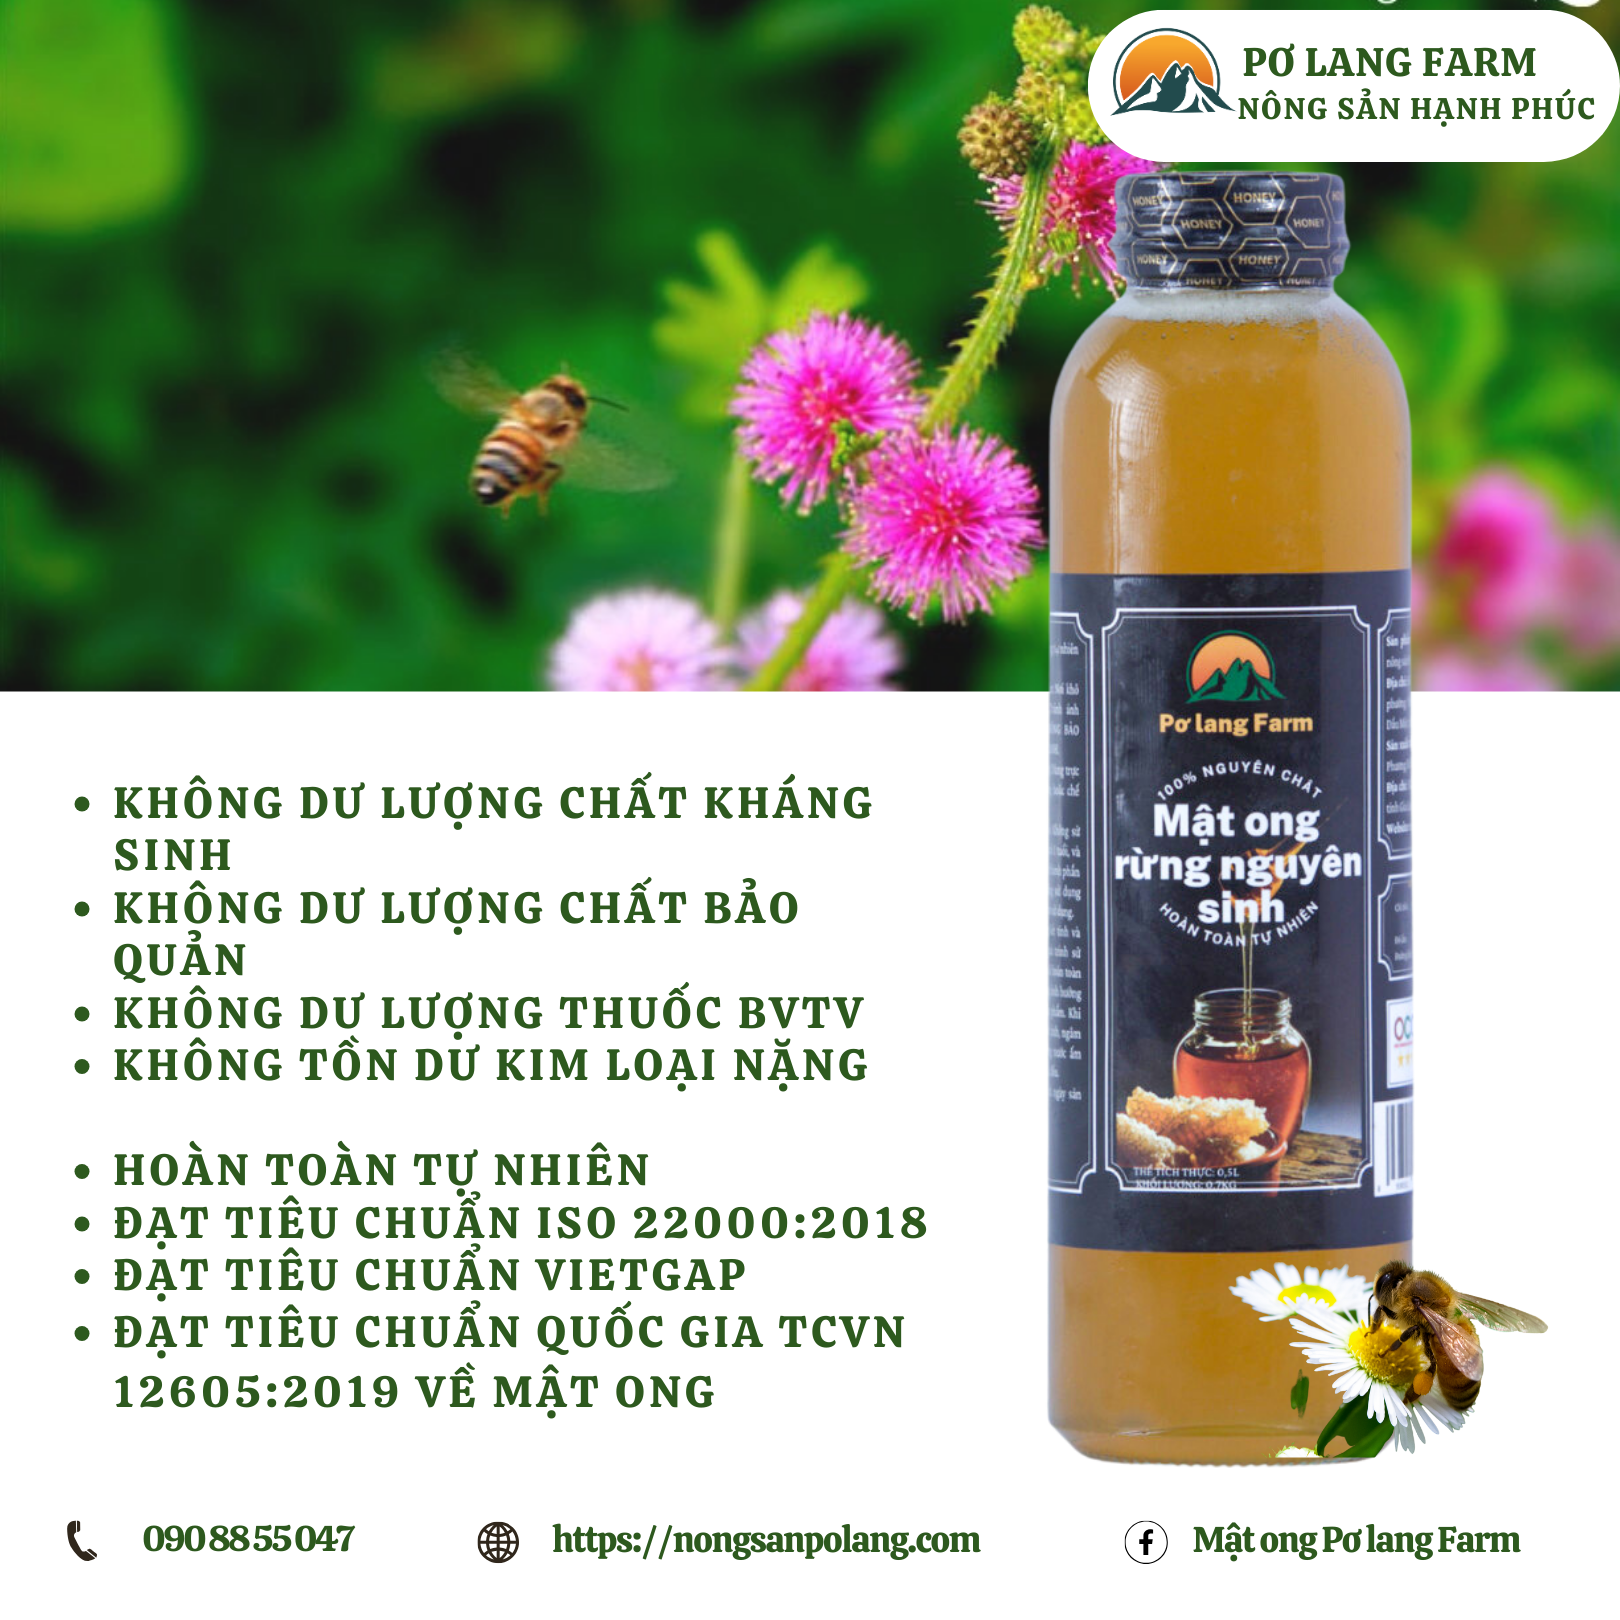 Mật ong hoa rừng nguyên sinh - Pơ lang Farm - 500ml